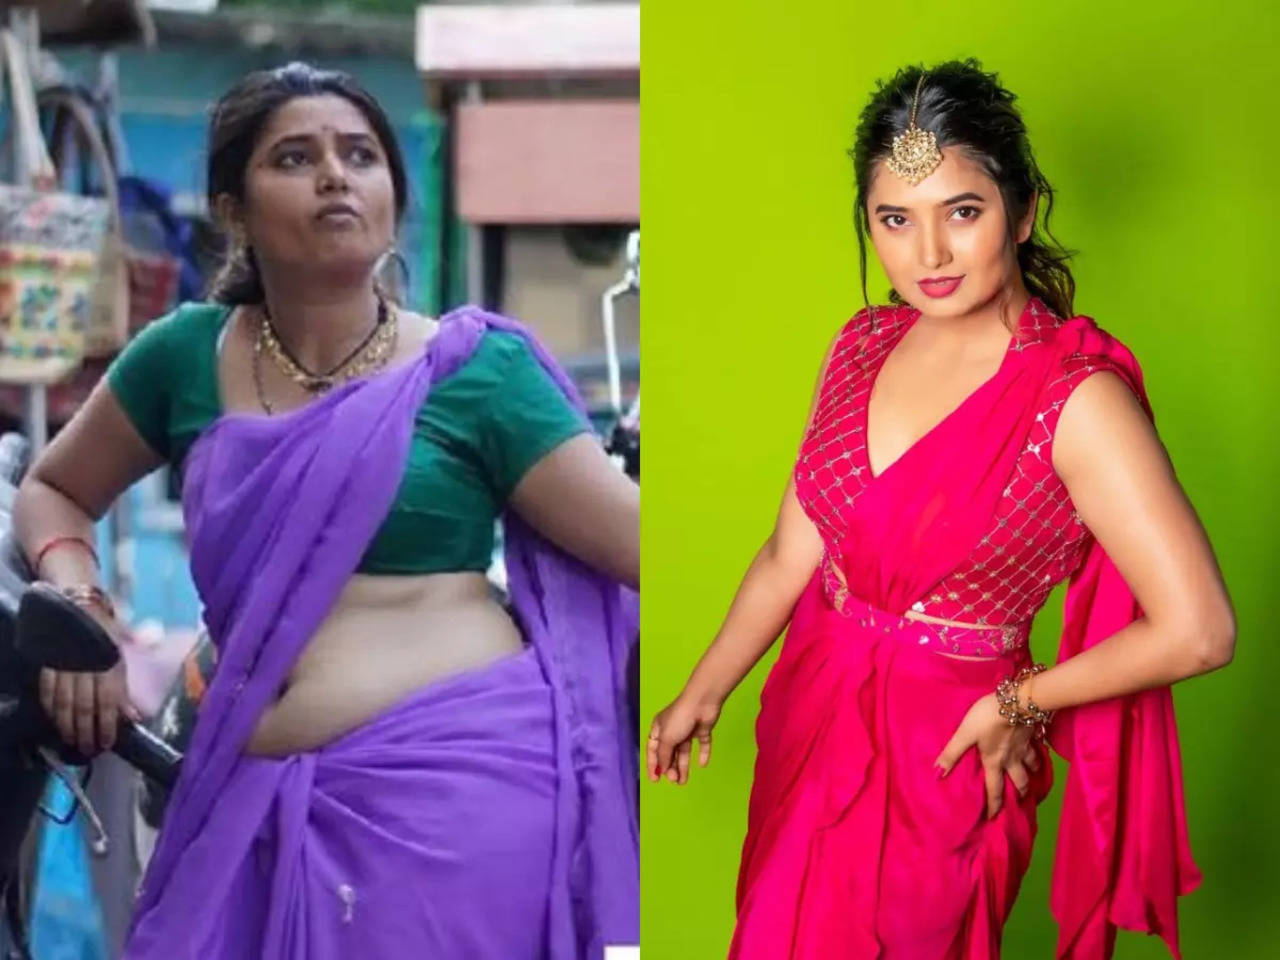 Prajakta Mali reveals she gained 7kgs to play sex worker in RaanBaazaar pic